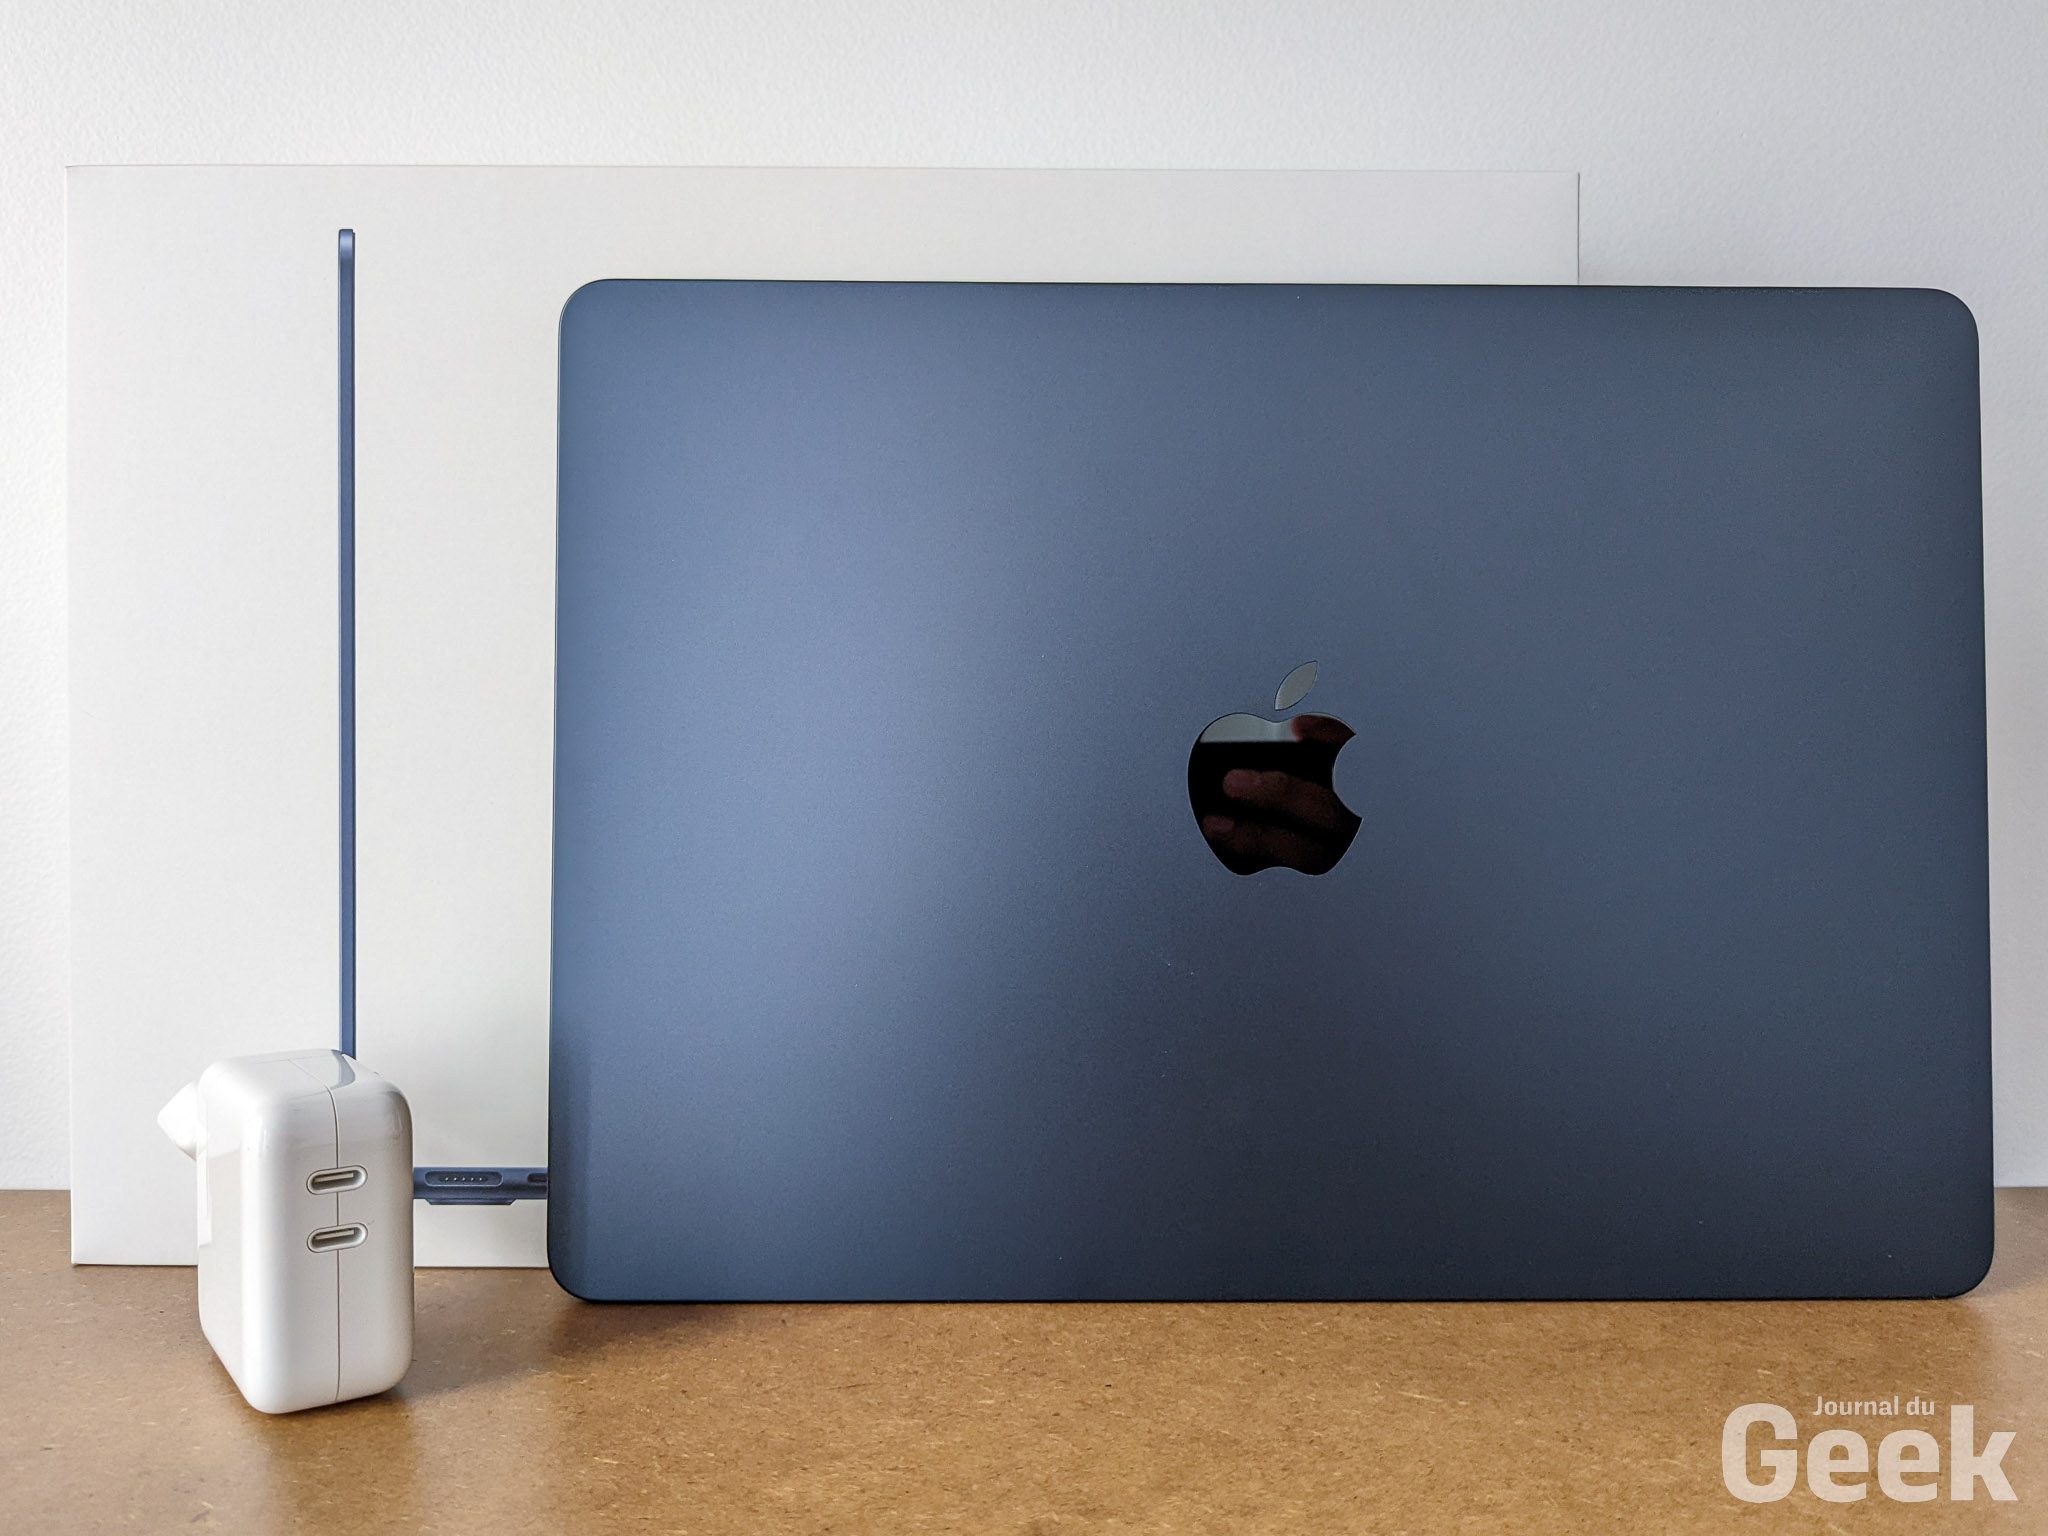 Mon Avis Honnête sur le MacBook Pro 16 pouces (Test, Montage, Photo)